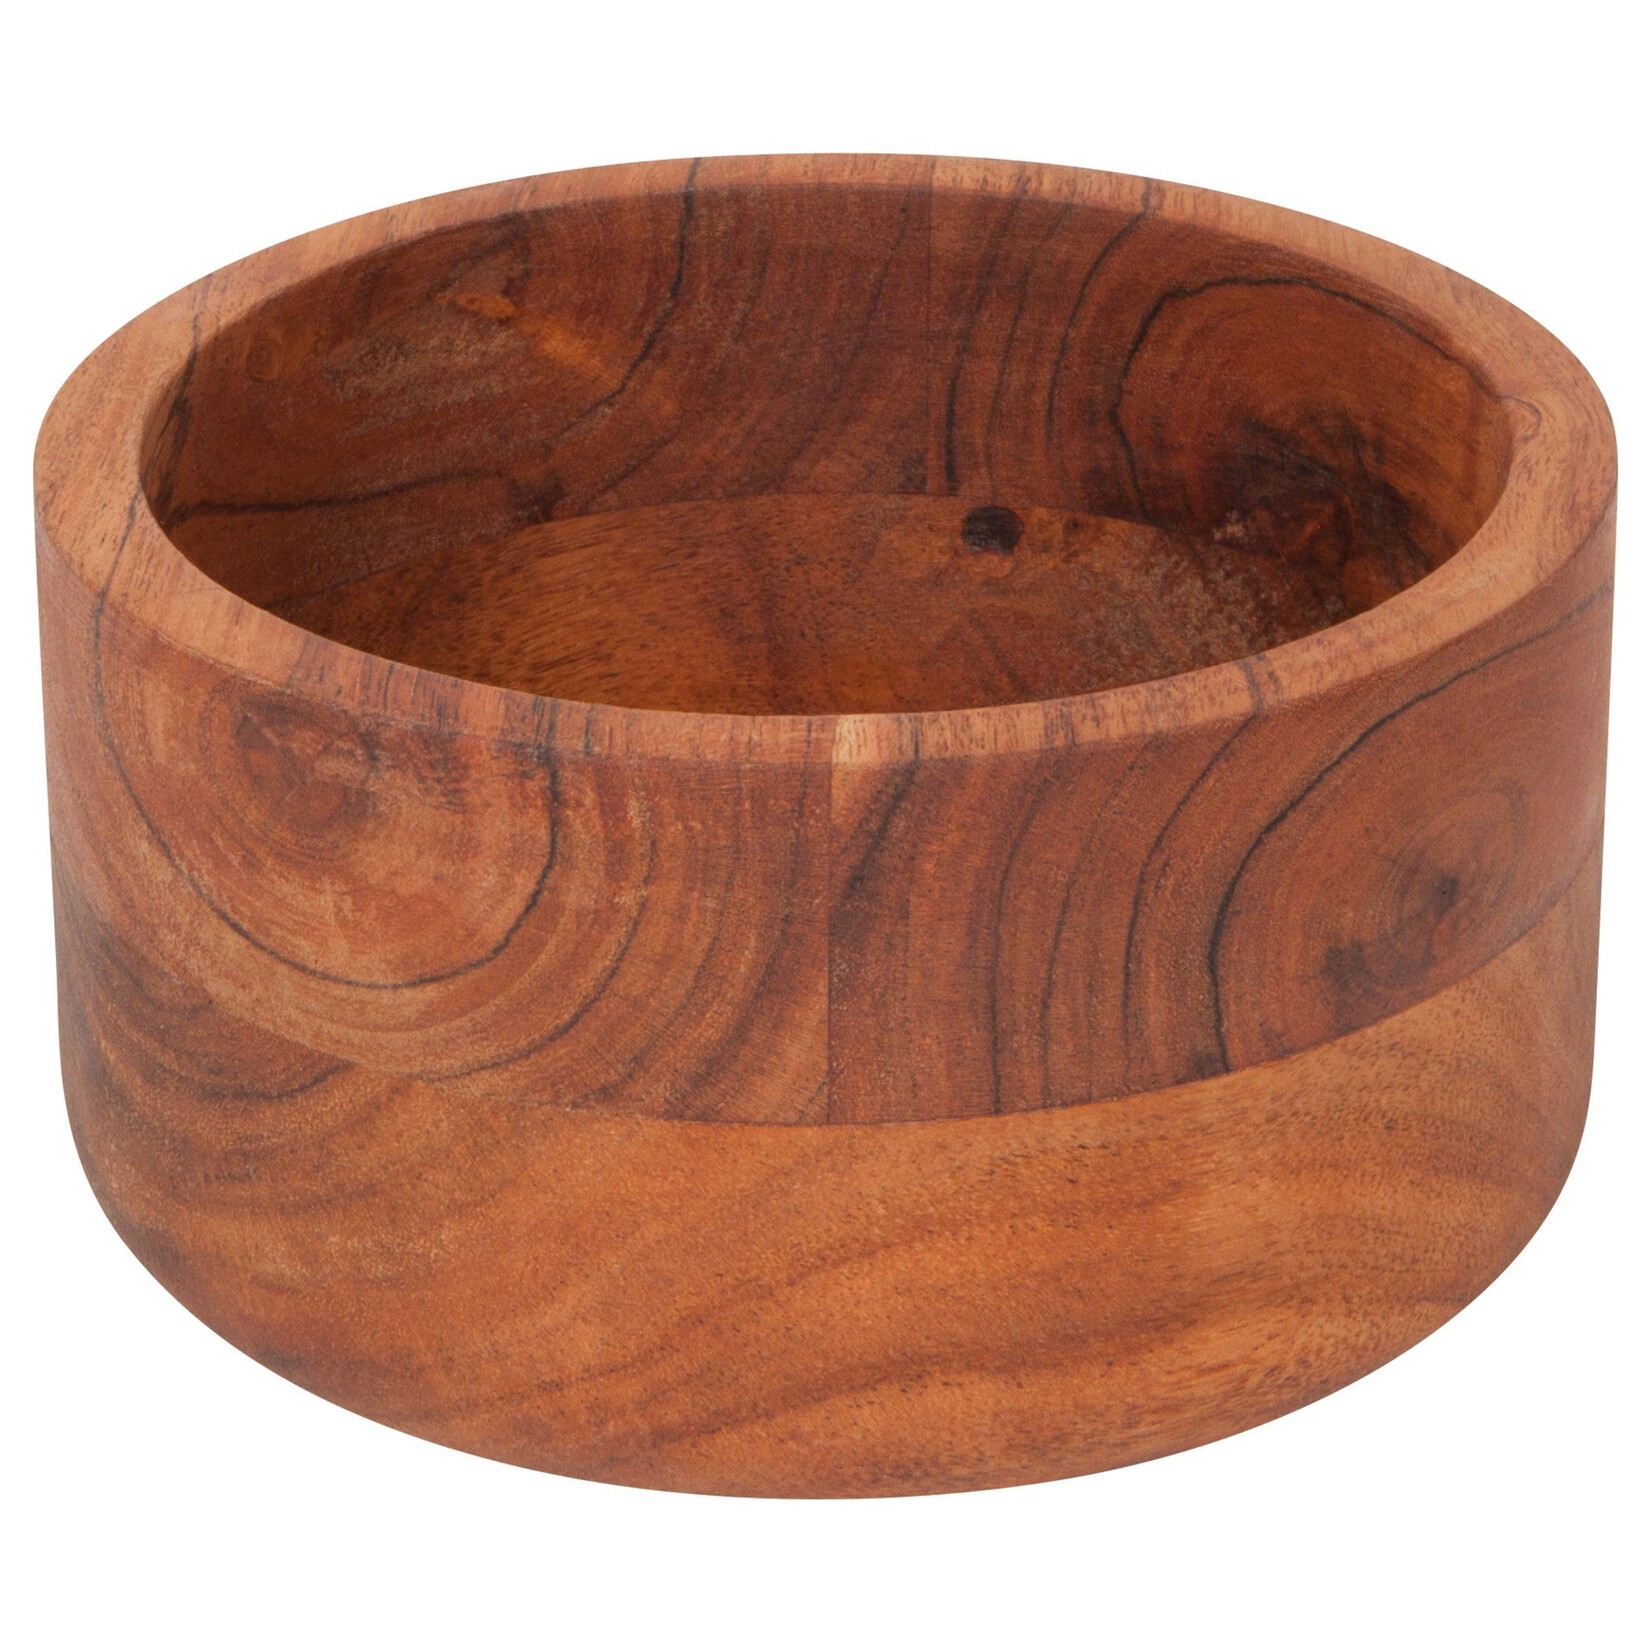 Acacia Wood Bowl - 6"